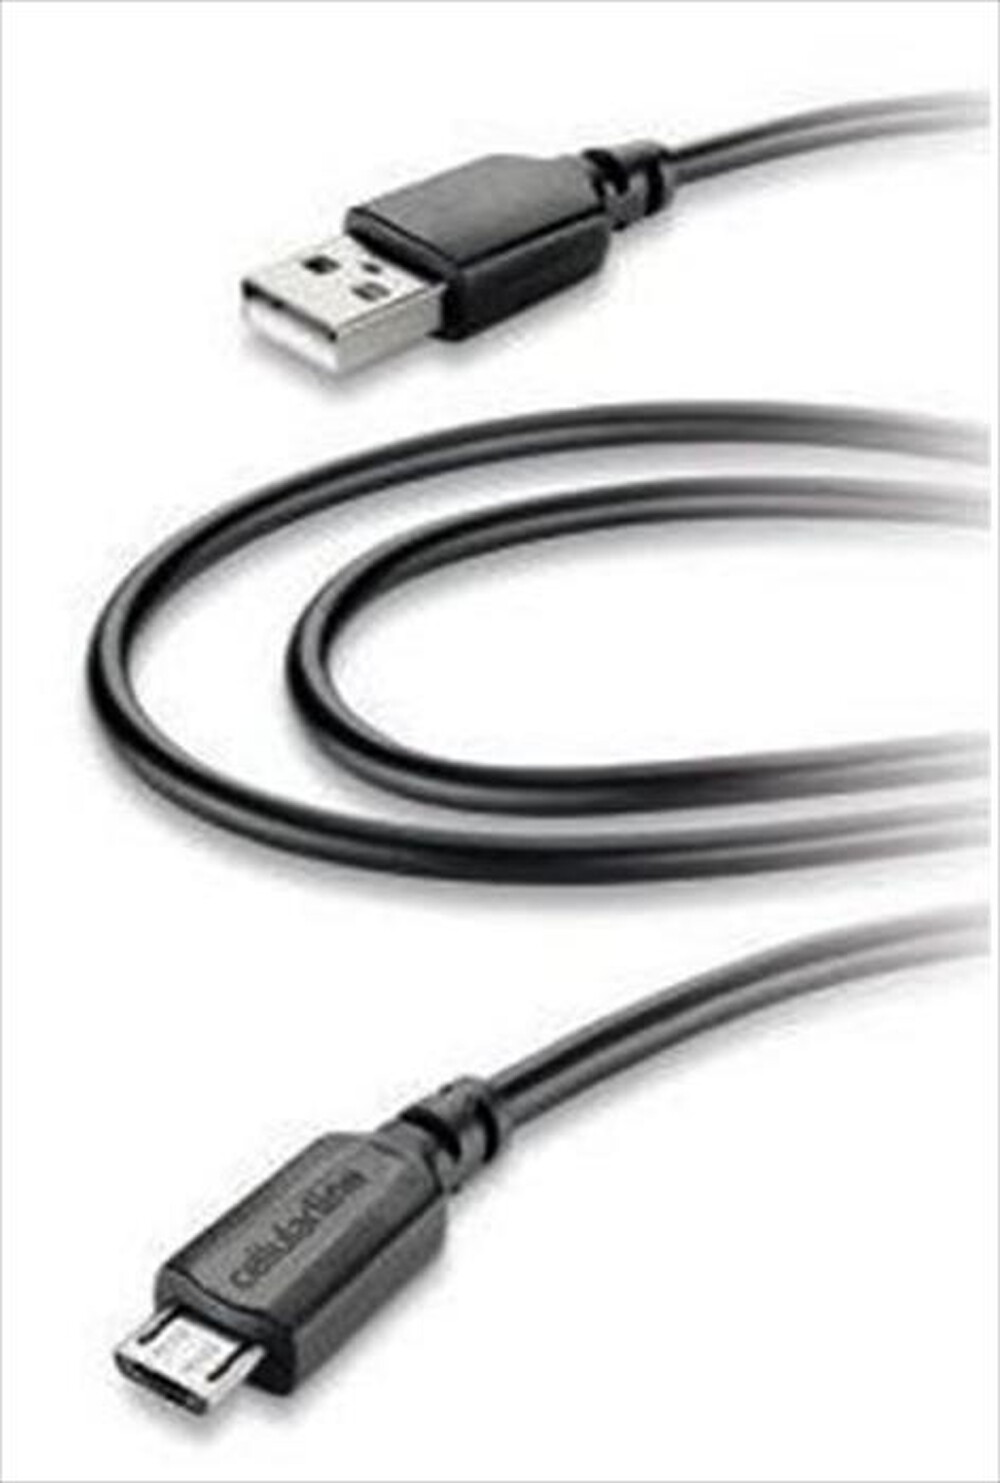 "CELLULARLINE - USB Data Cable Home - Micro USB-Nero"